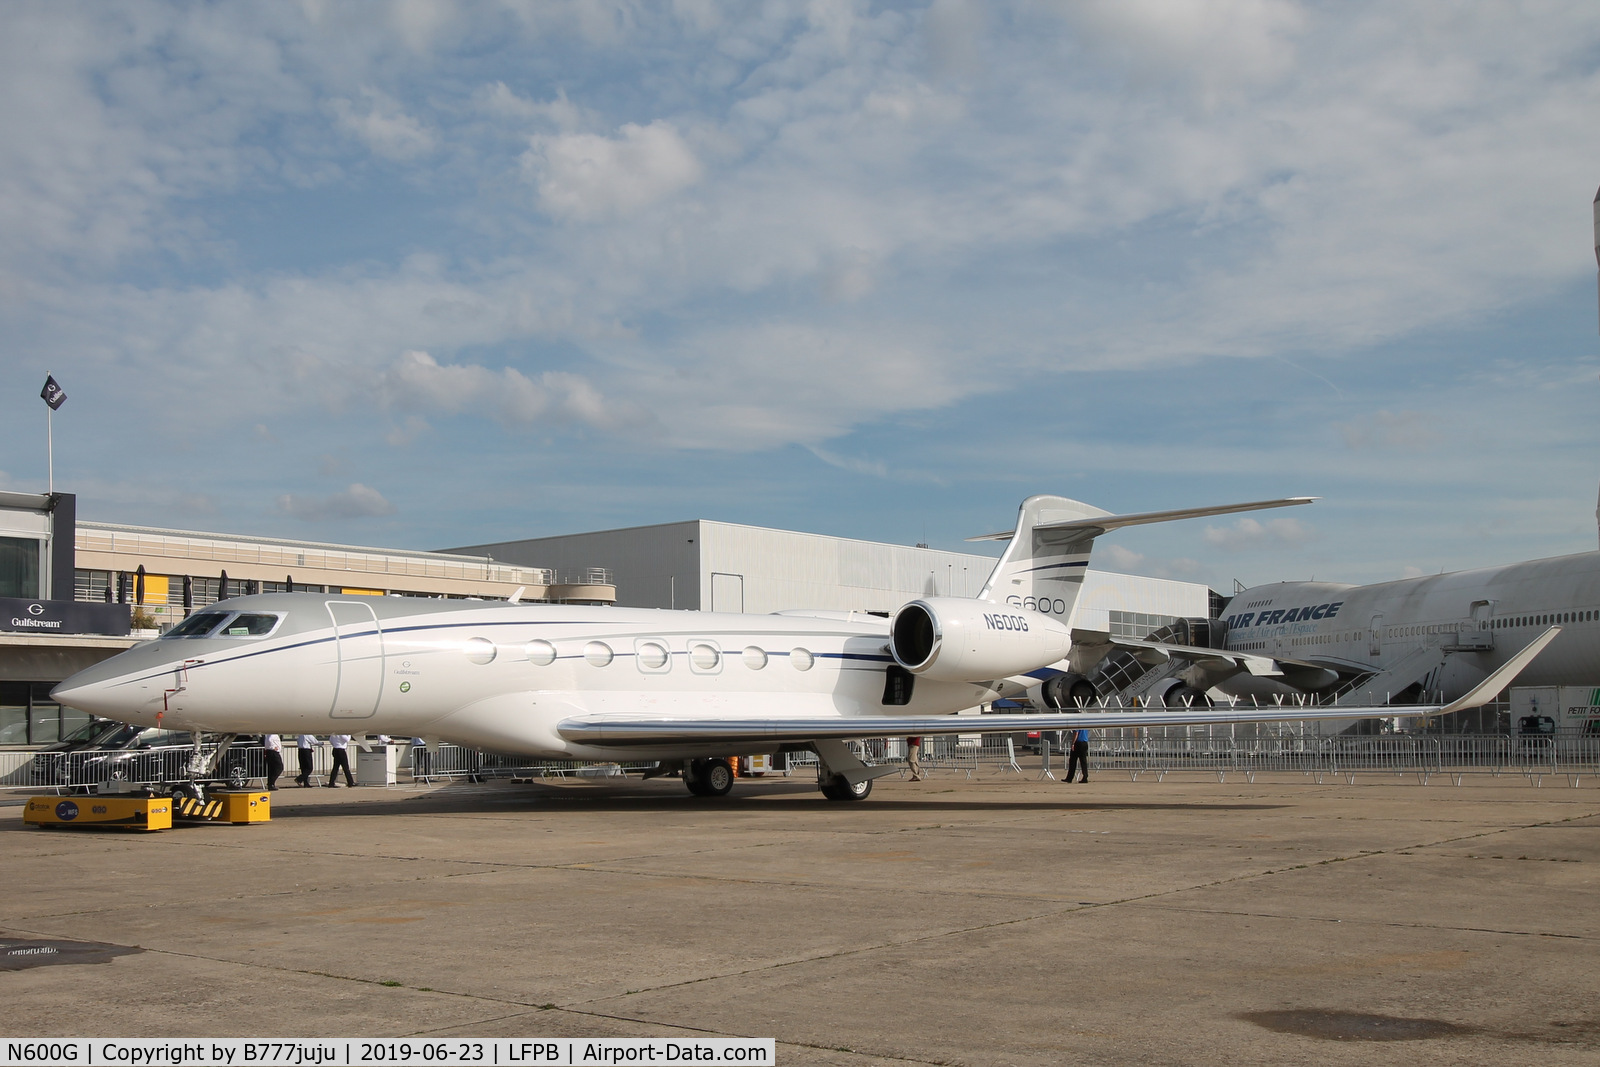 N600G, 2016 Gulfstream Aerospace GVII-G600 C/N 73005, on display at SIAE 2019